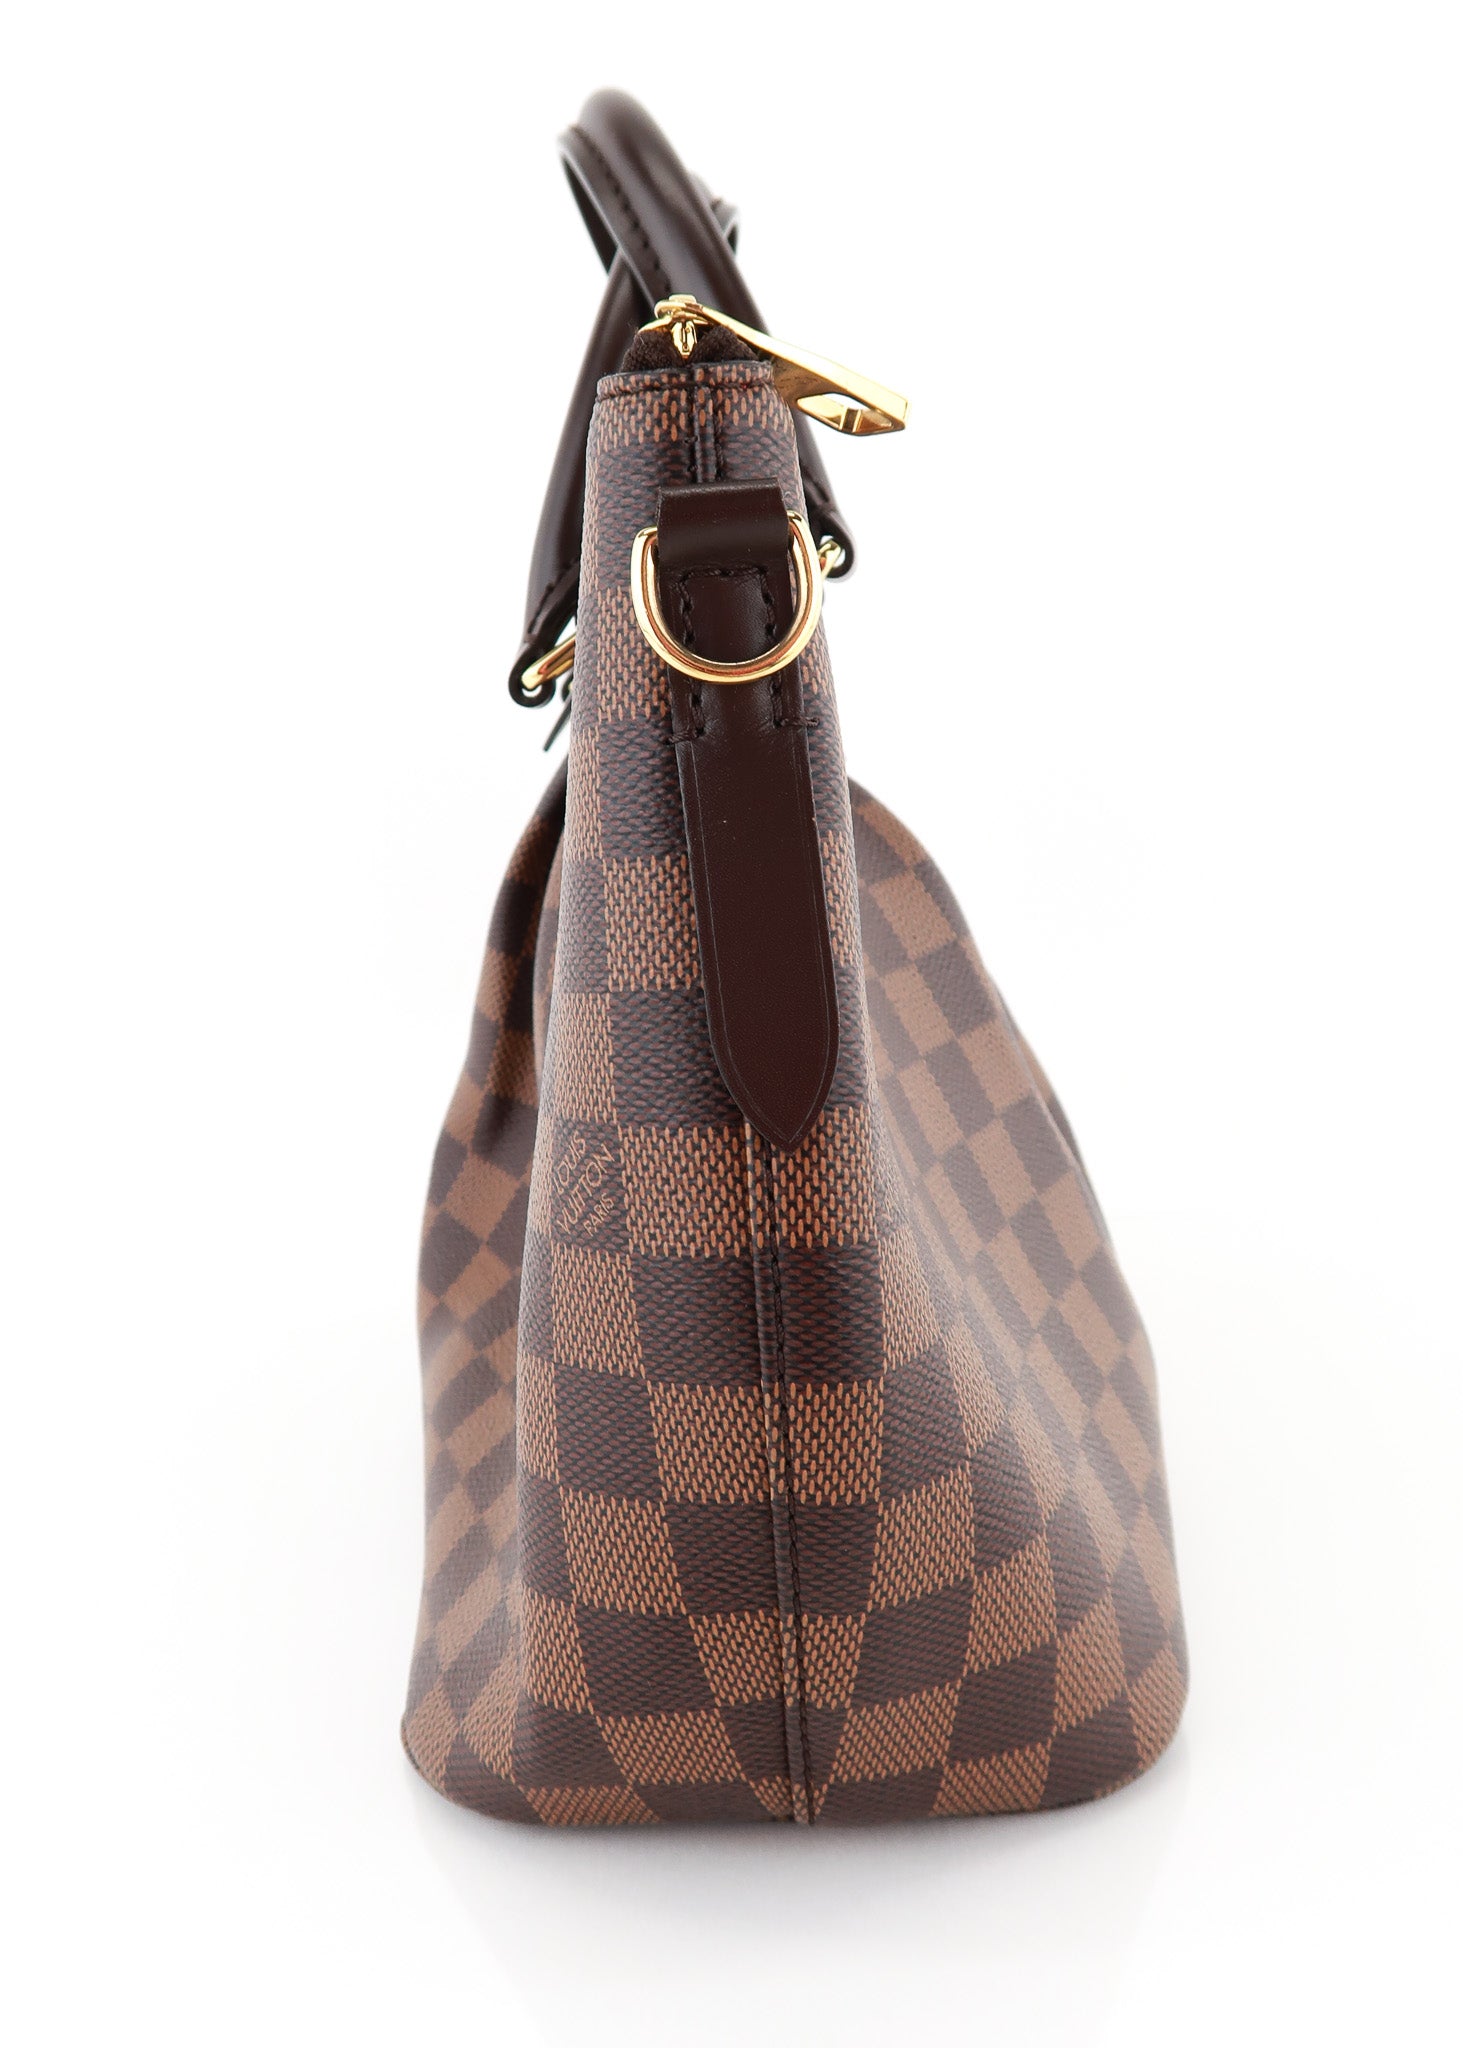 Louis Vuitton Siena Shoulder Bag